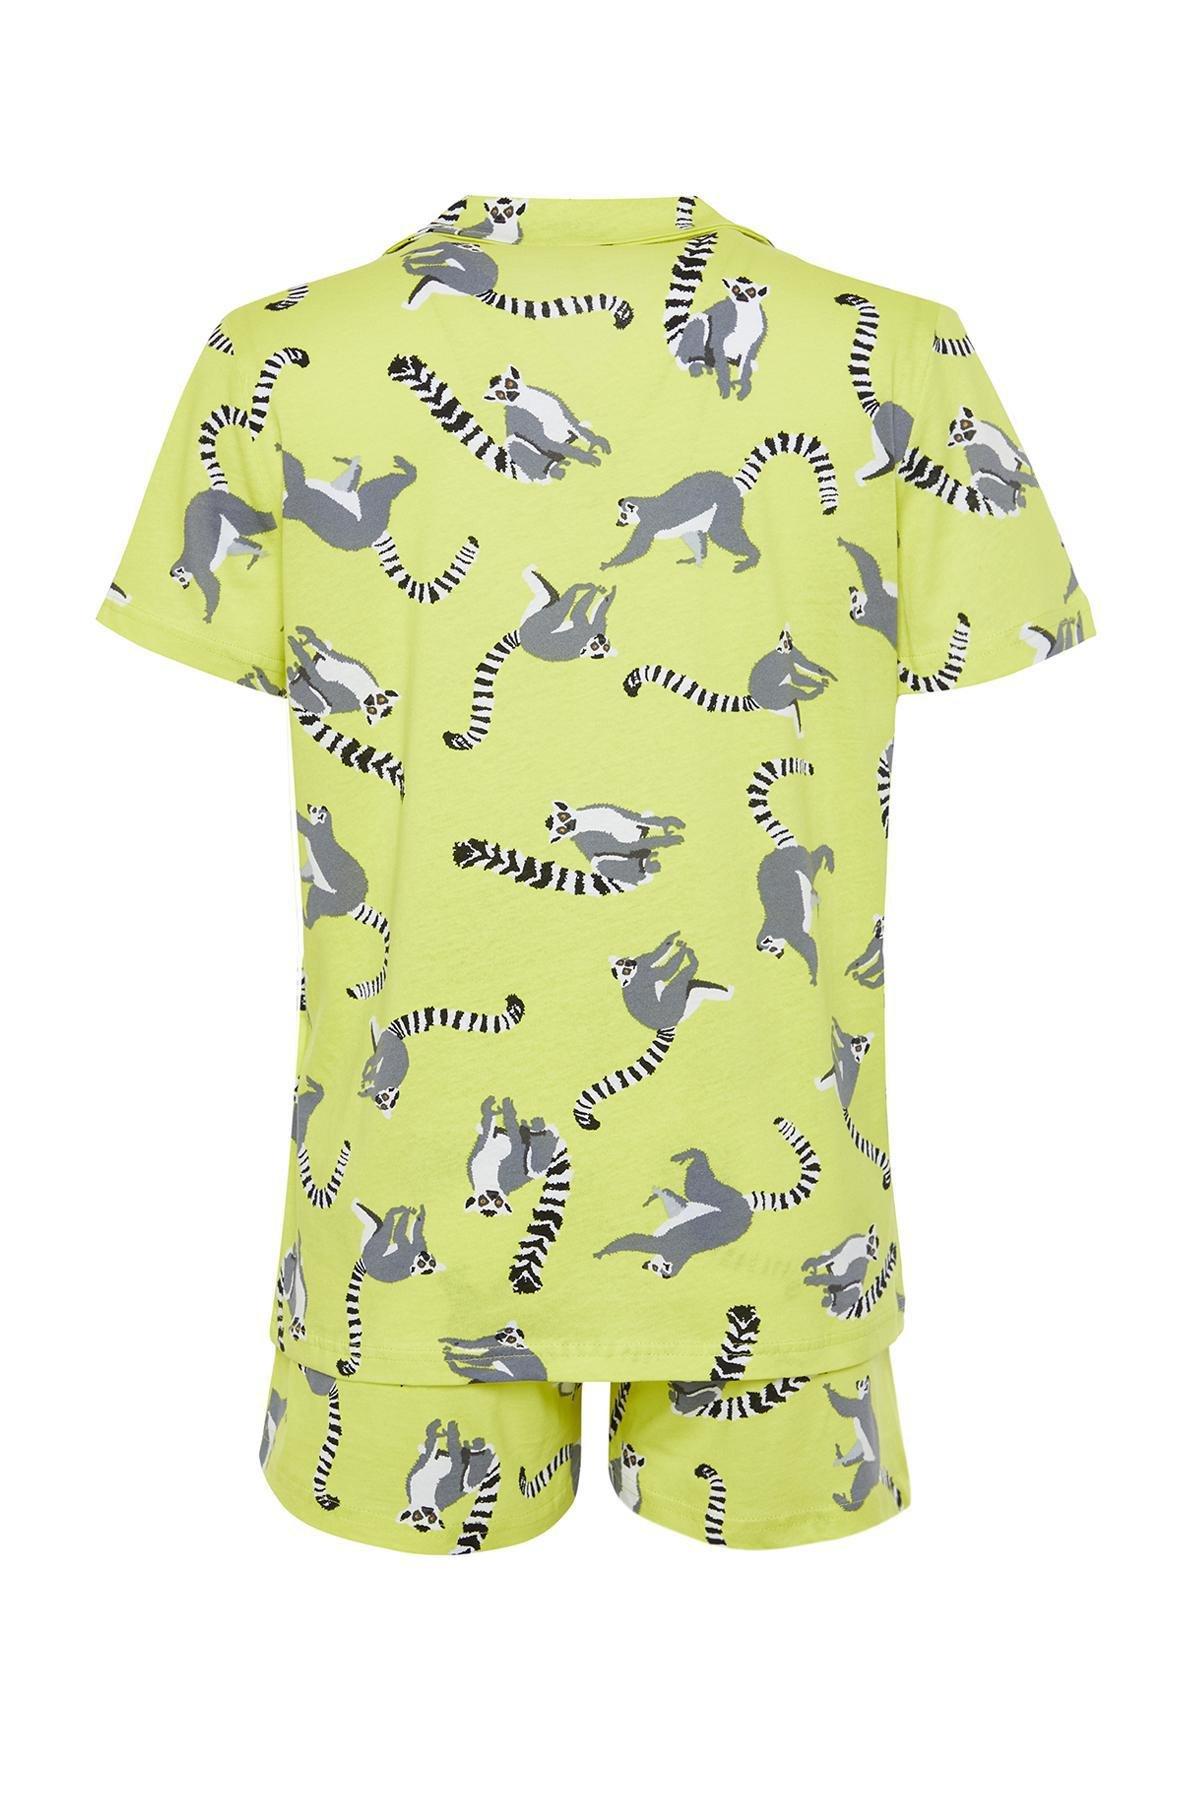 Trendyol - Green Cotton Animal Single Jersey Pajamas Set